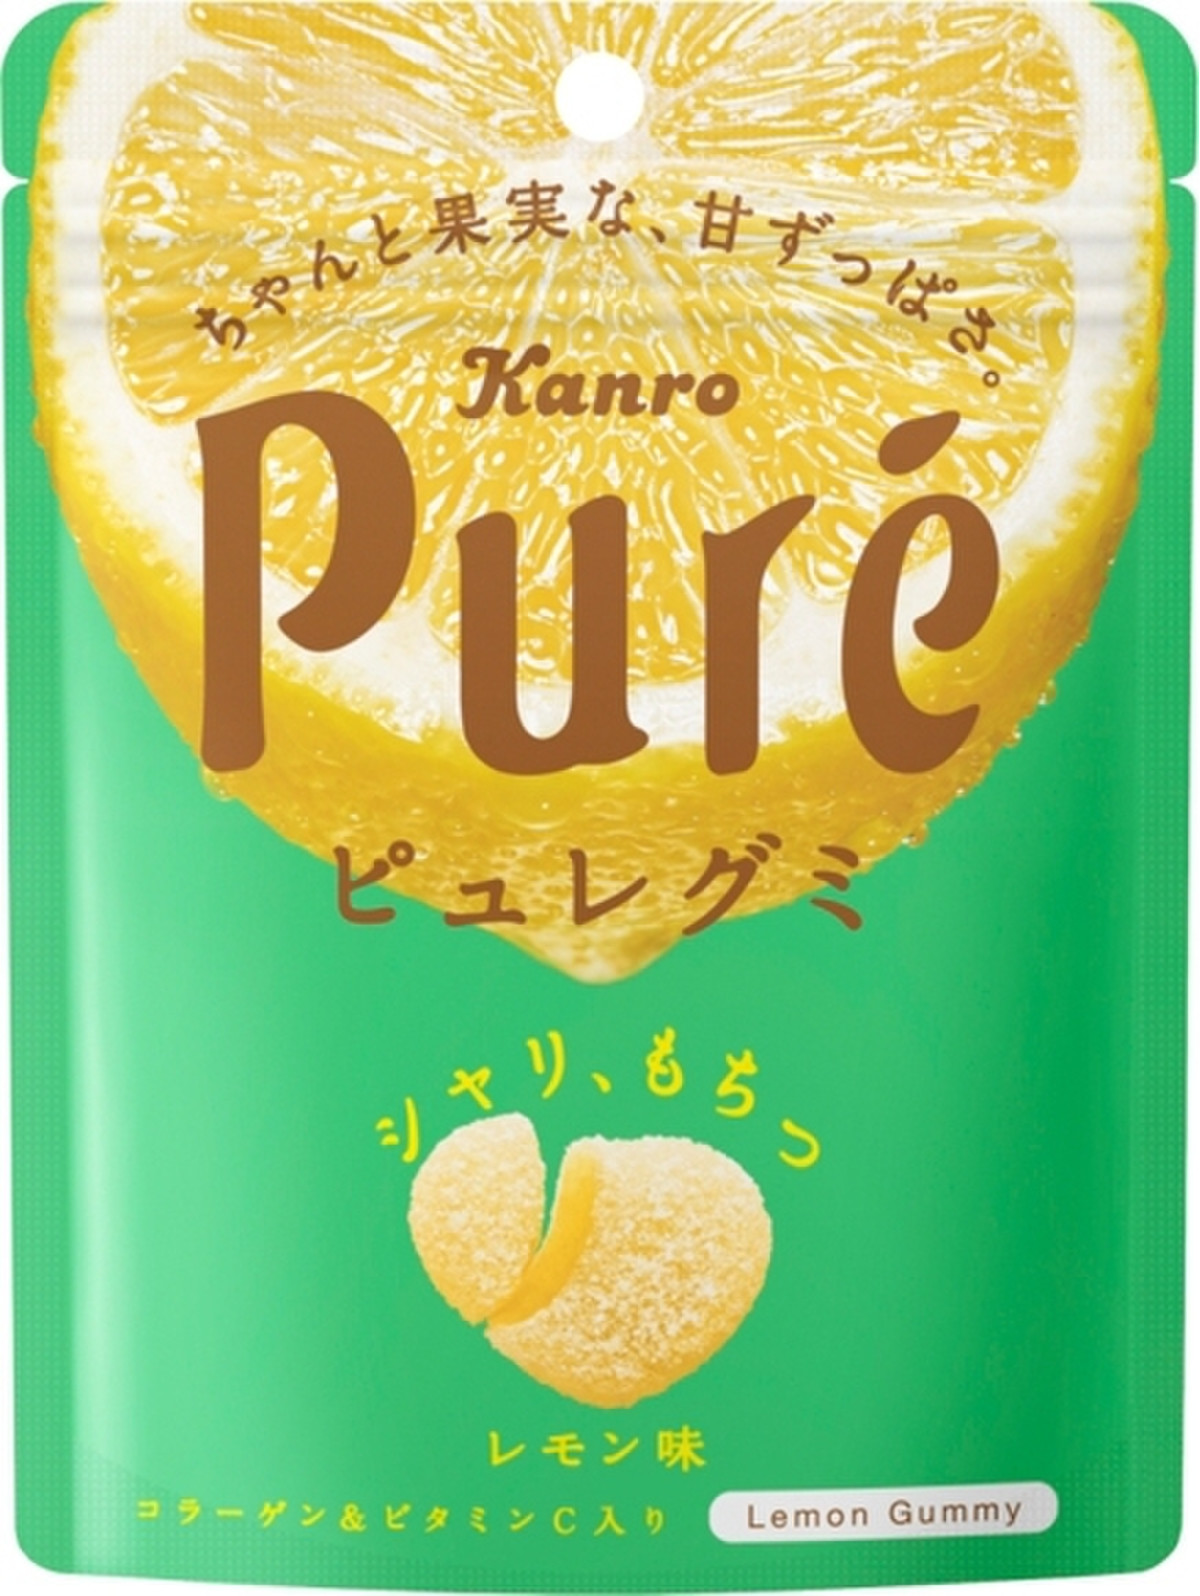 高評価 カンロ ピュレグミ レモン 袋56g 製造終了 のクチコミ 評価 カロリー情報 もぐナビ